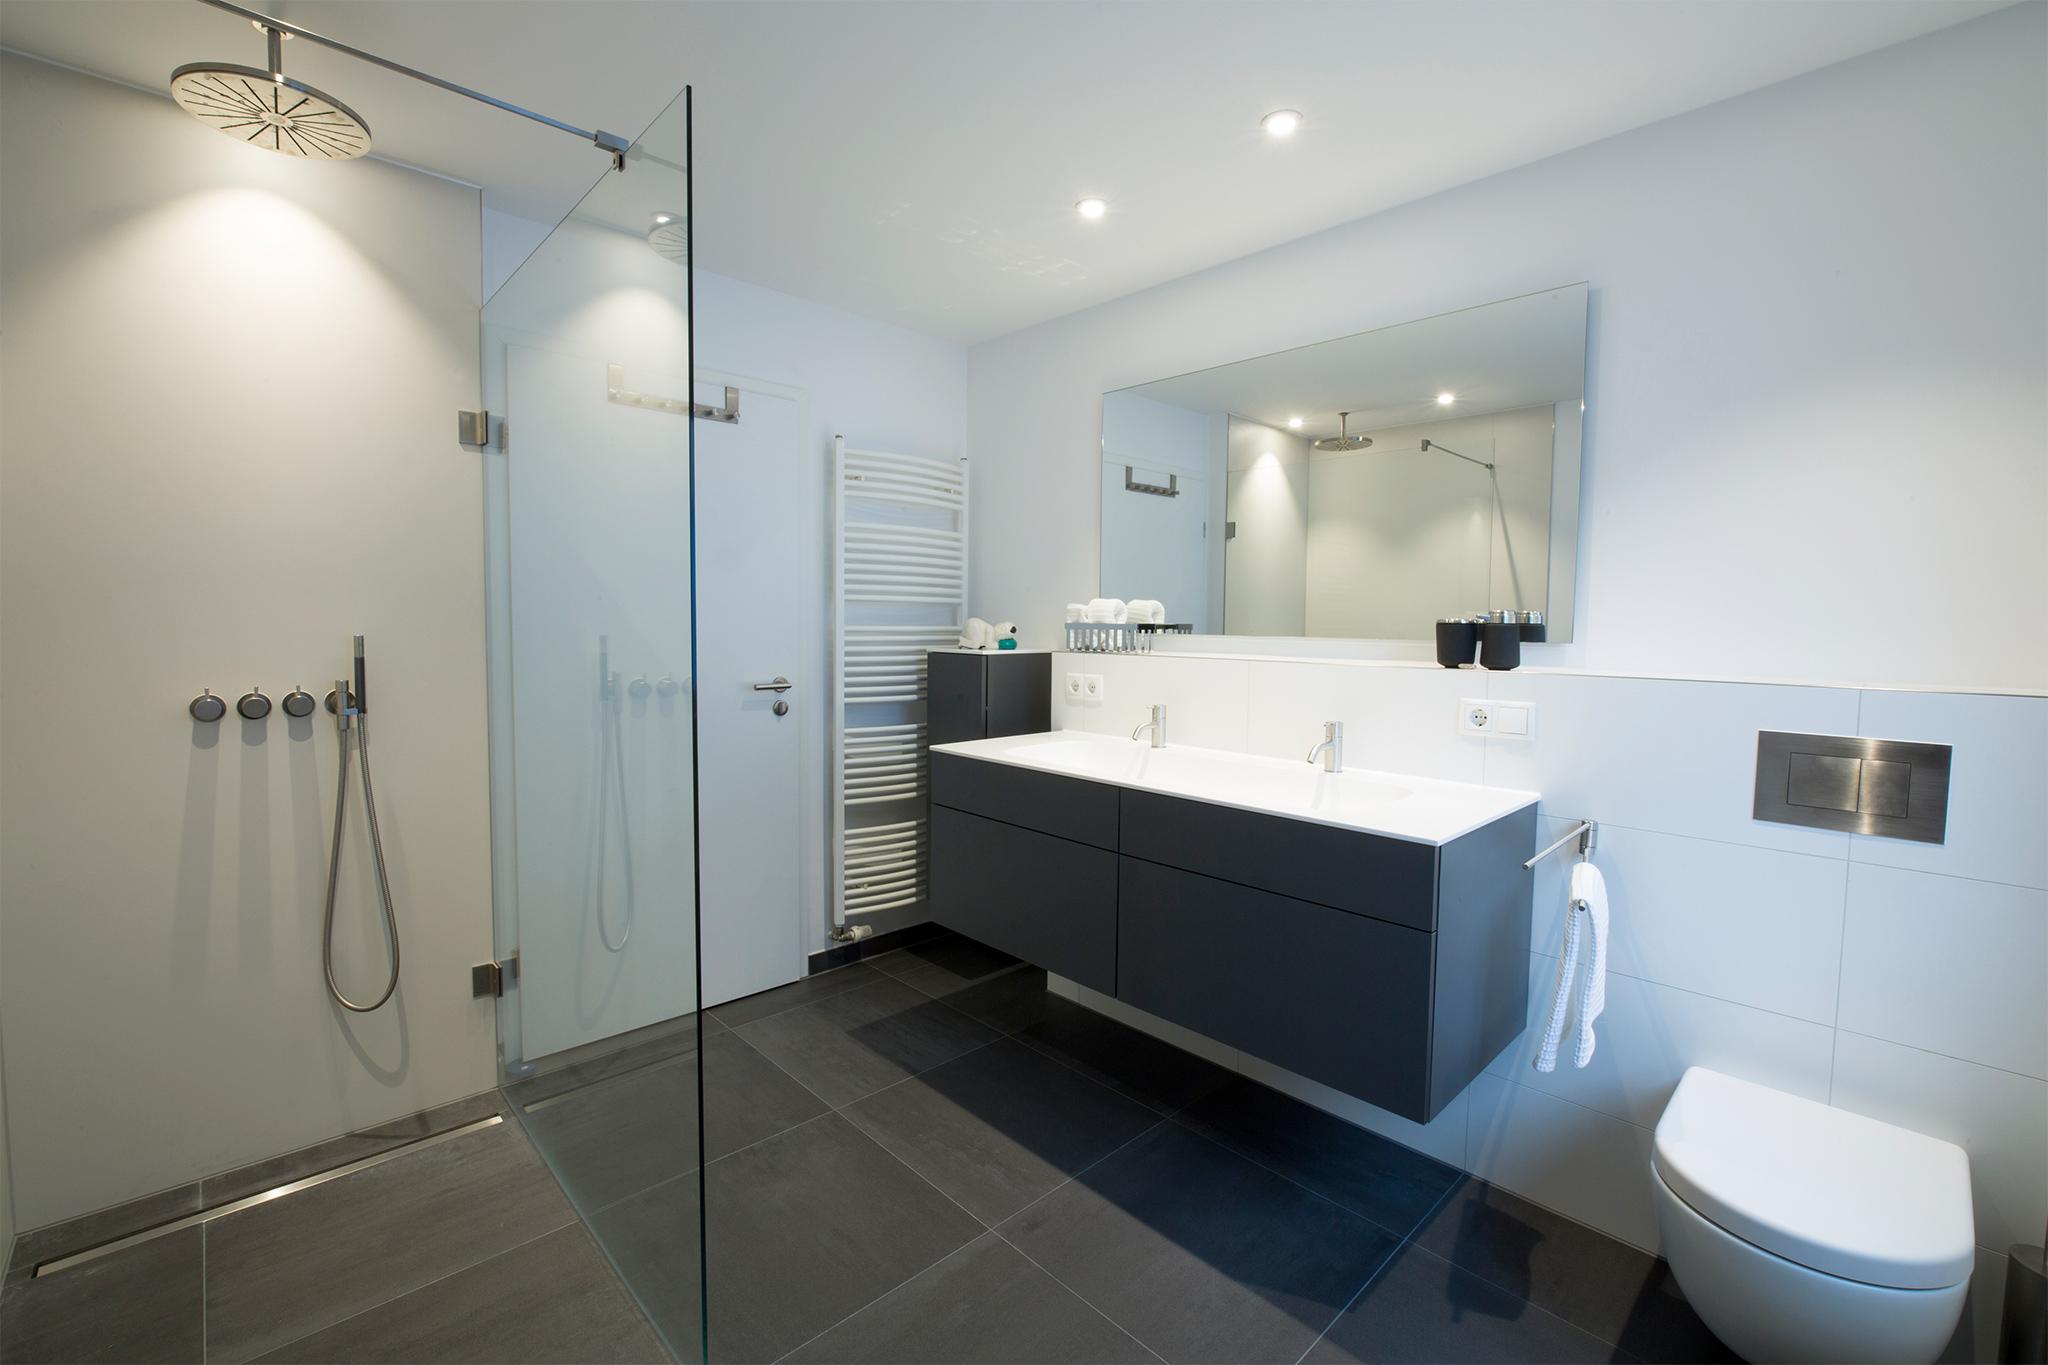 Das Bad: Alles in bester Ordnung #badezimmer #duschbad #ebenerdigedusche #doppelwaschtisch #zimmergestaltung ©HEIMWOHL GmbH